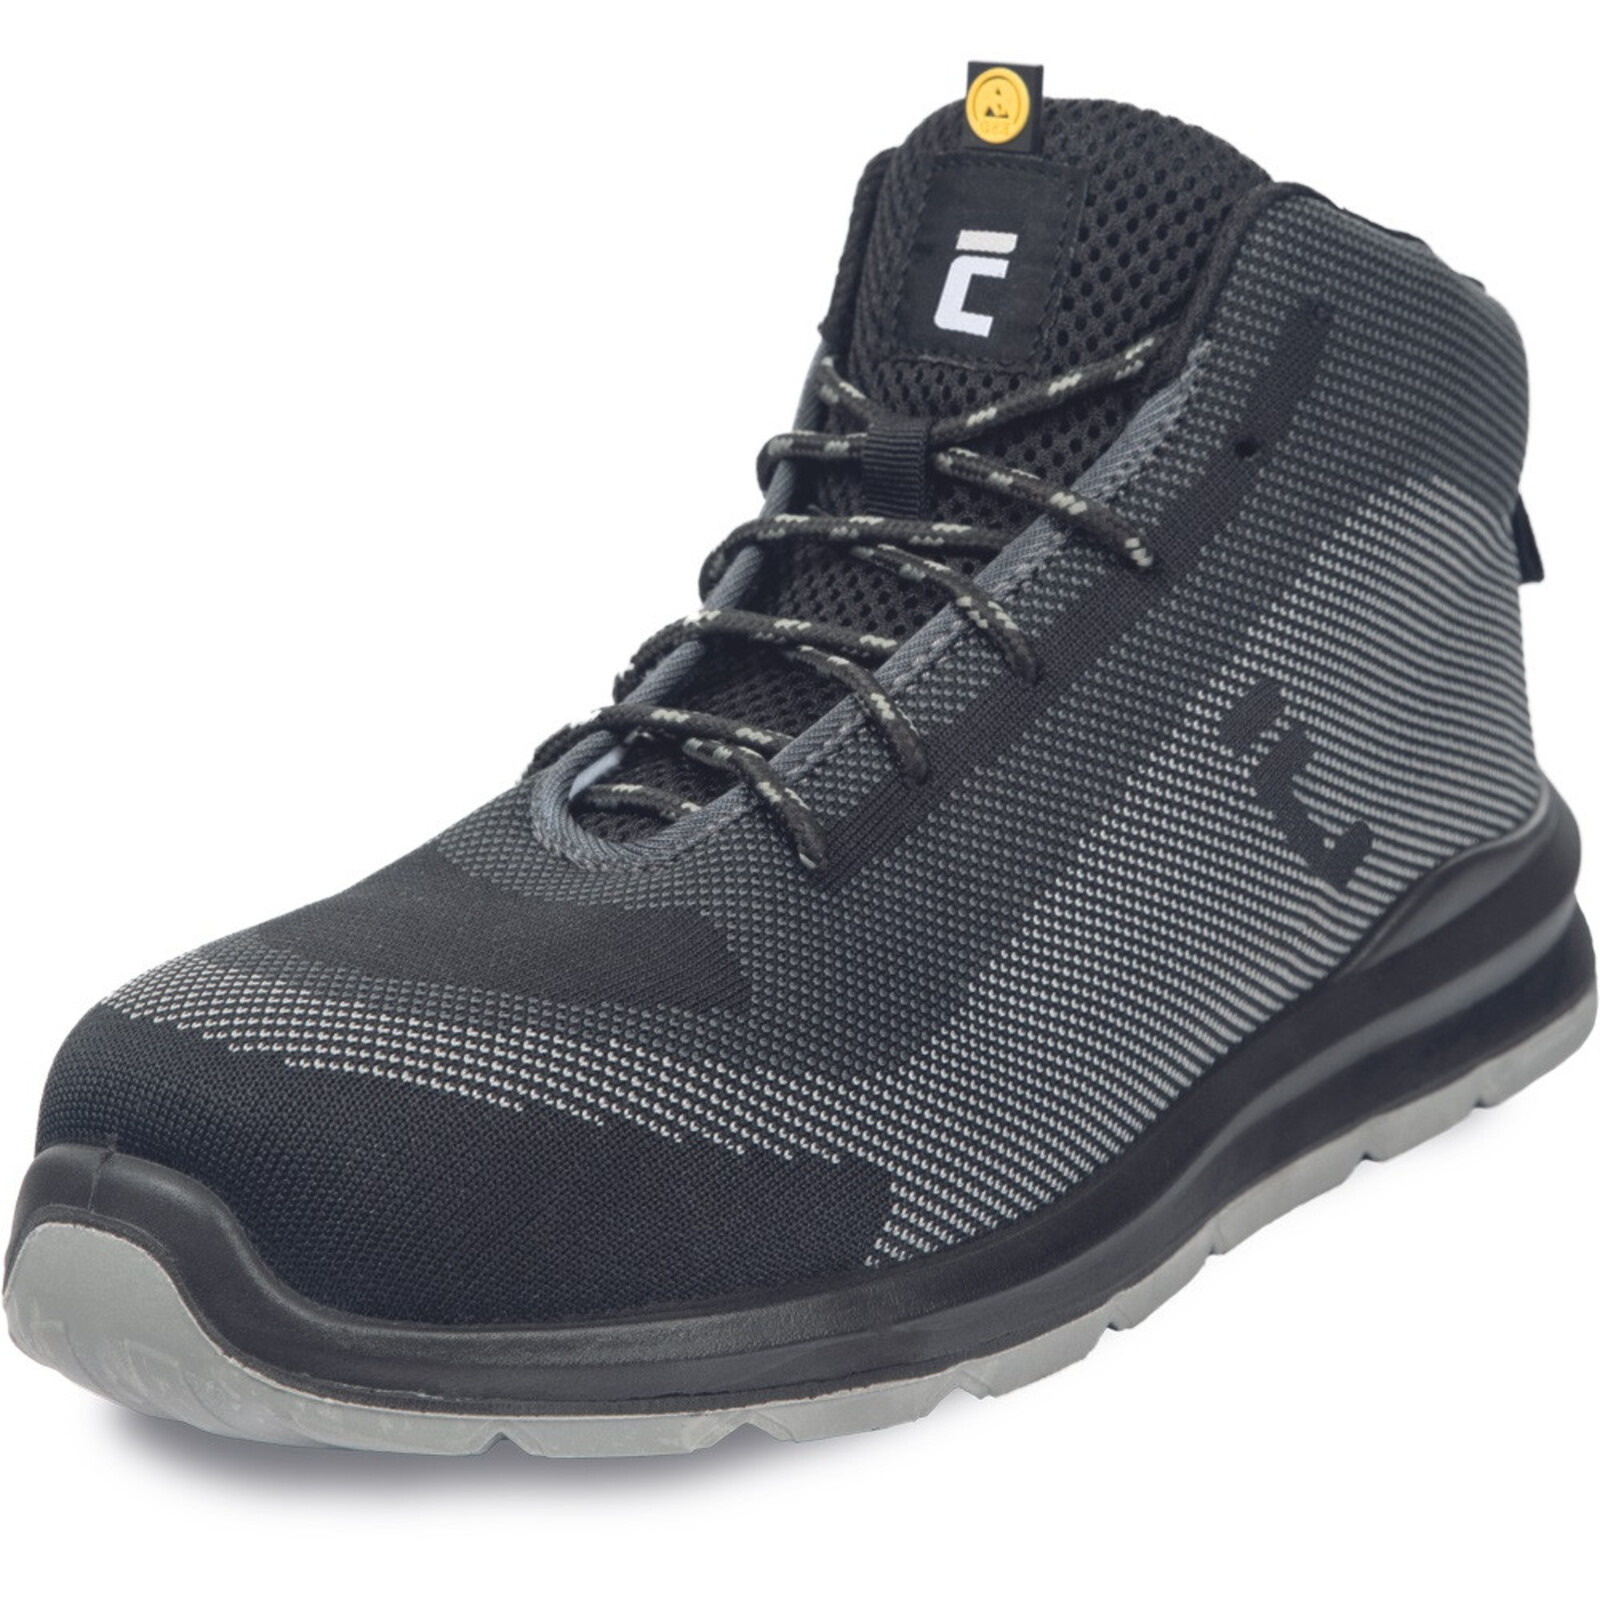 Bezpečnostná členková obuv Cerva Vadorros S1P MF ESD SRC - veľkosť: 48, farba: sivá/čierna